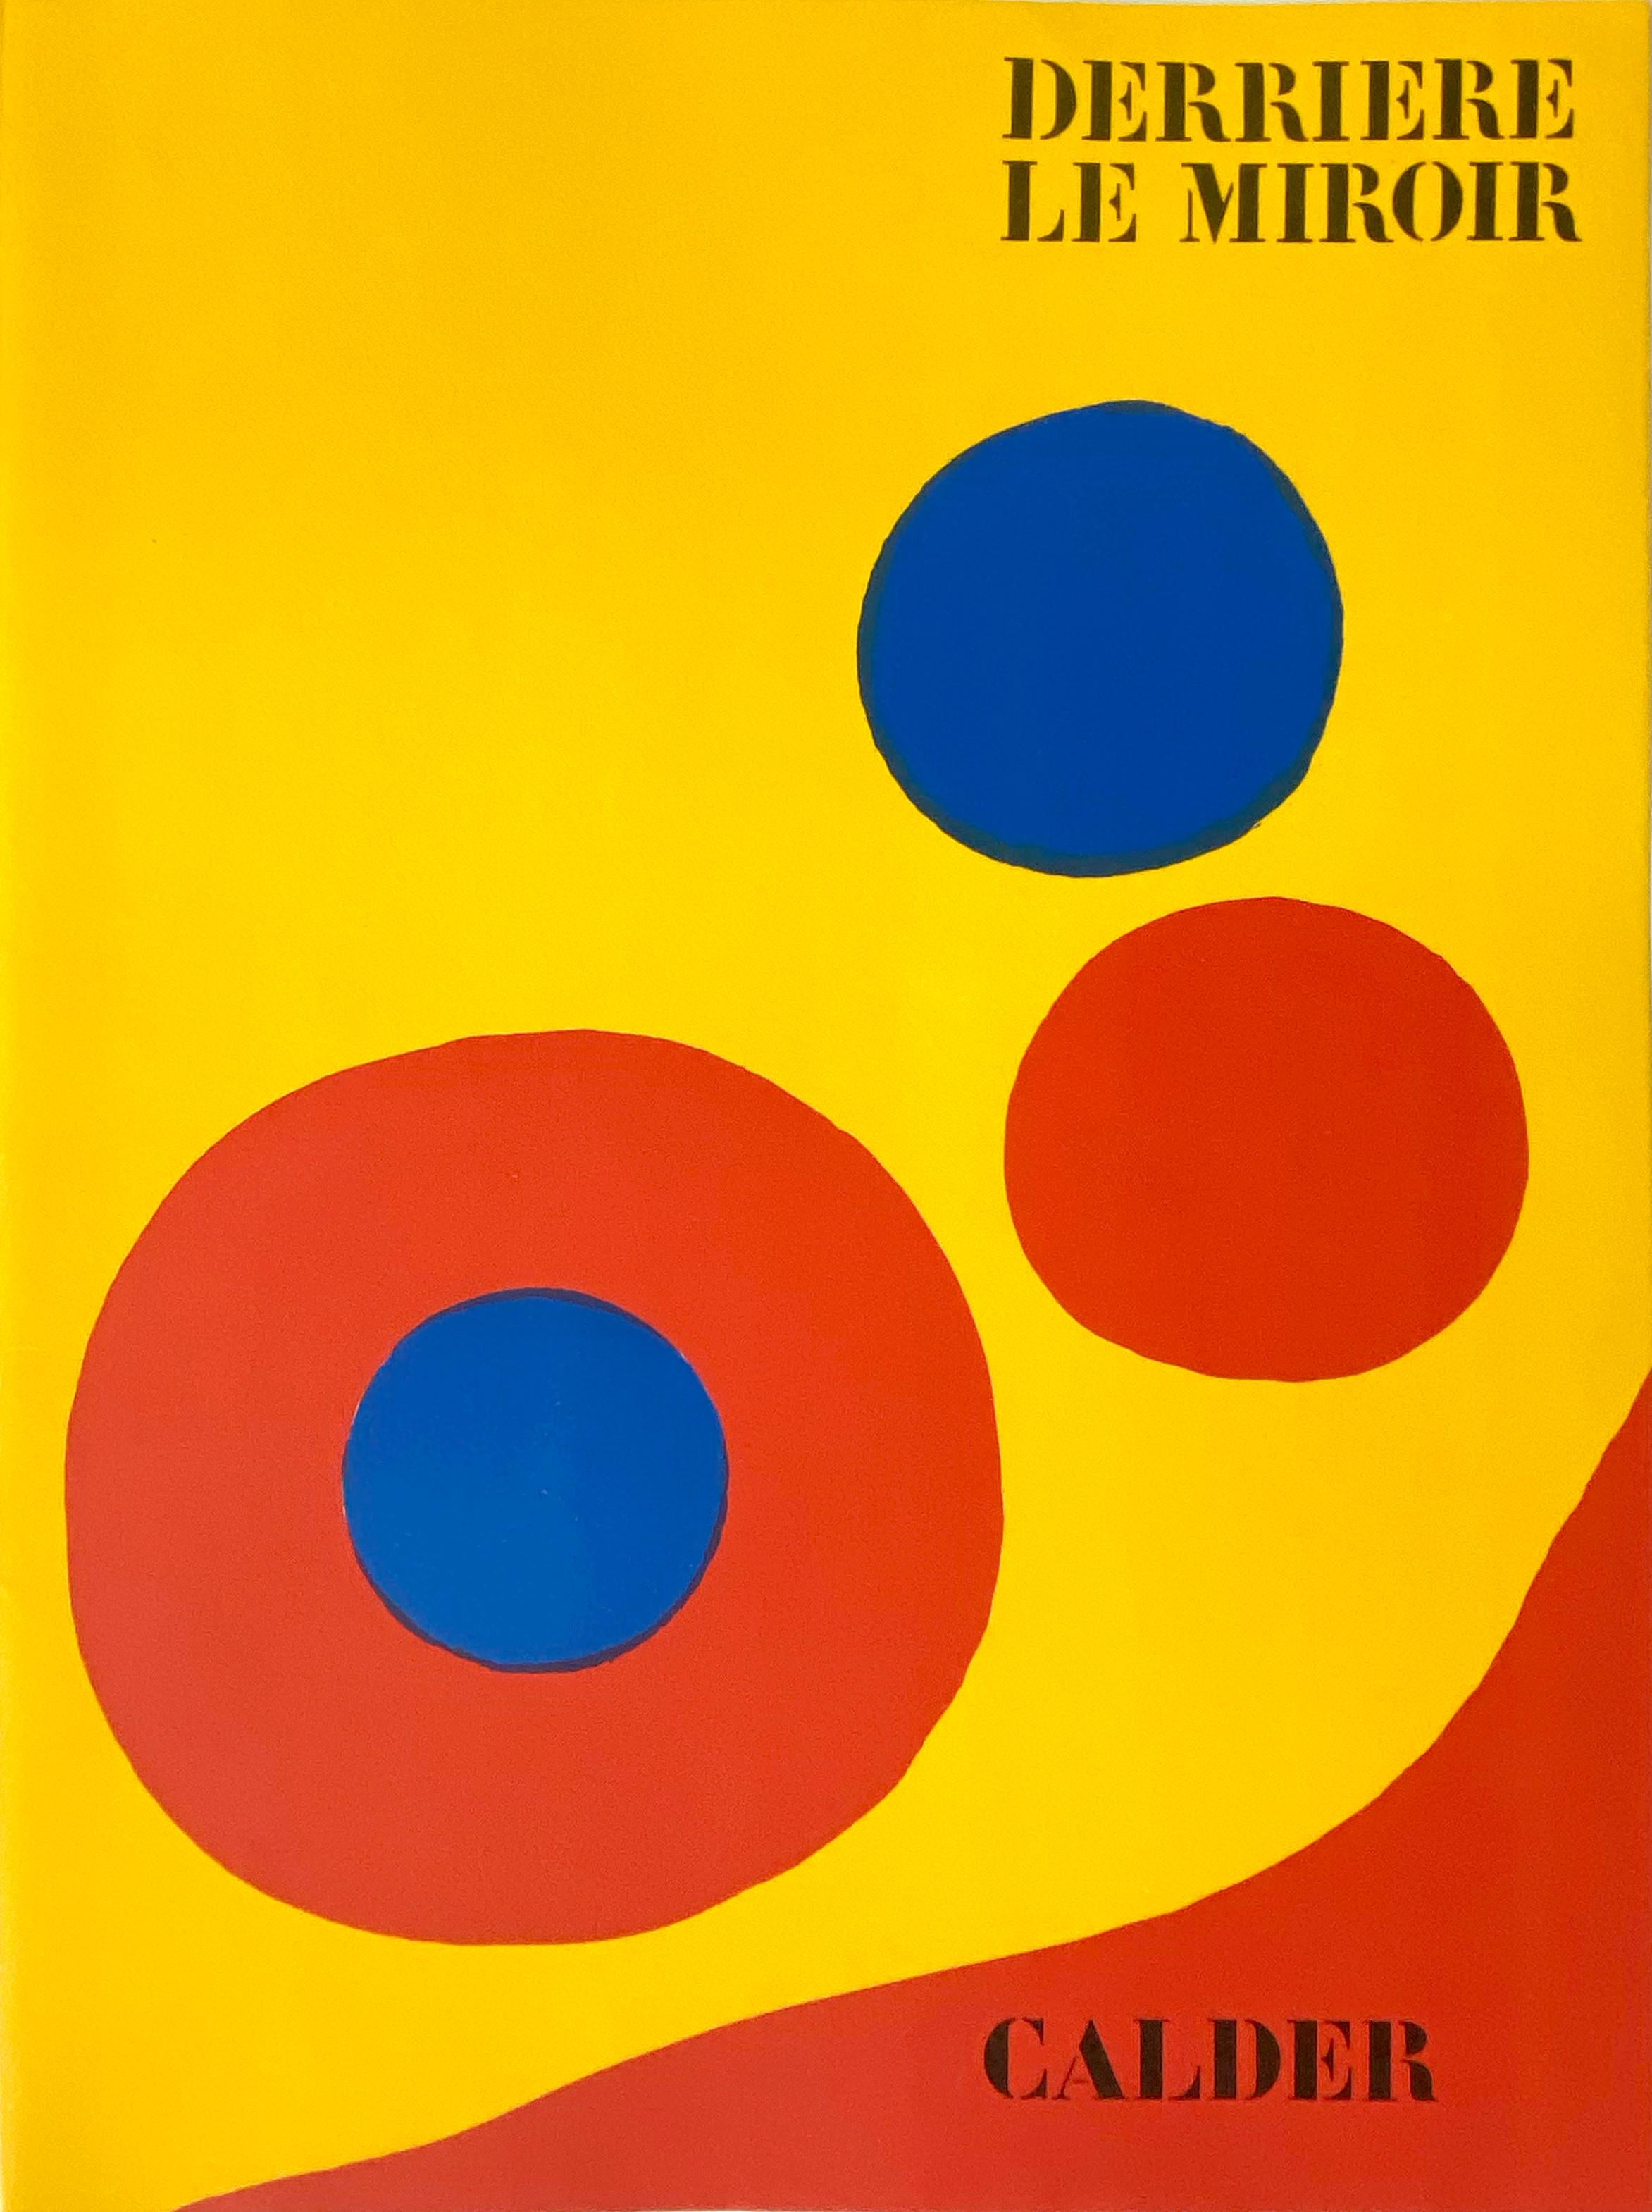 Alexander Calder Abstract Print - Derriere Le Miroir No. 201, Cover